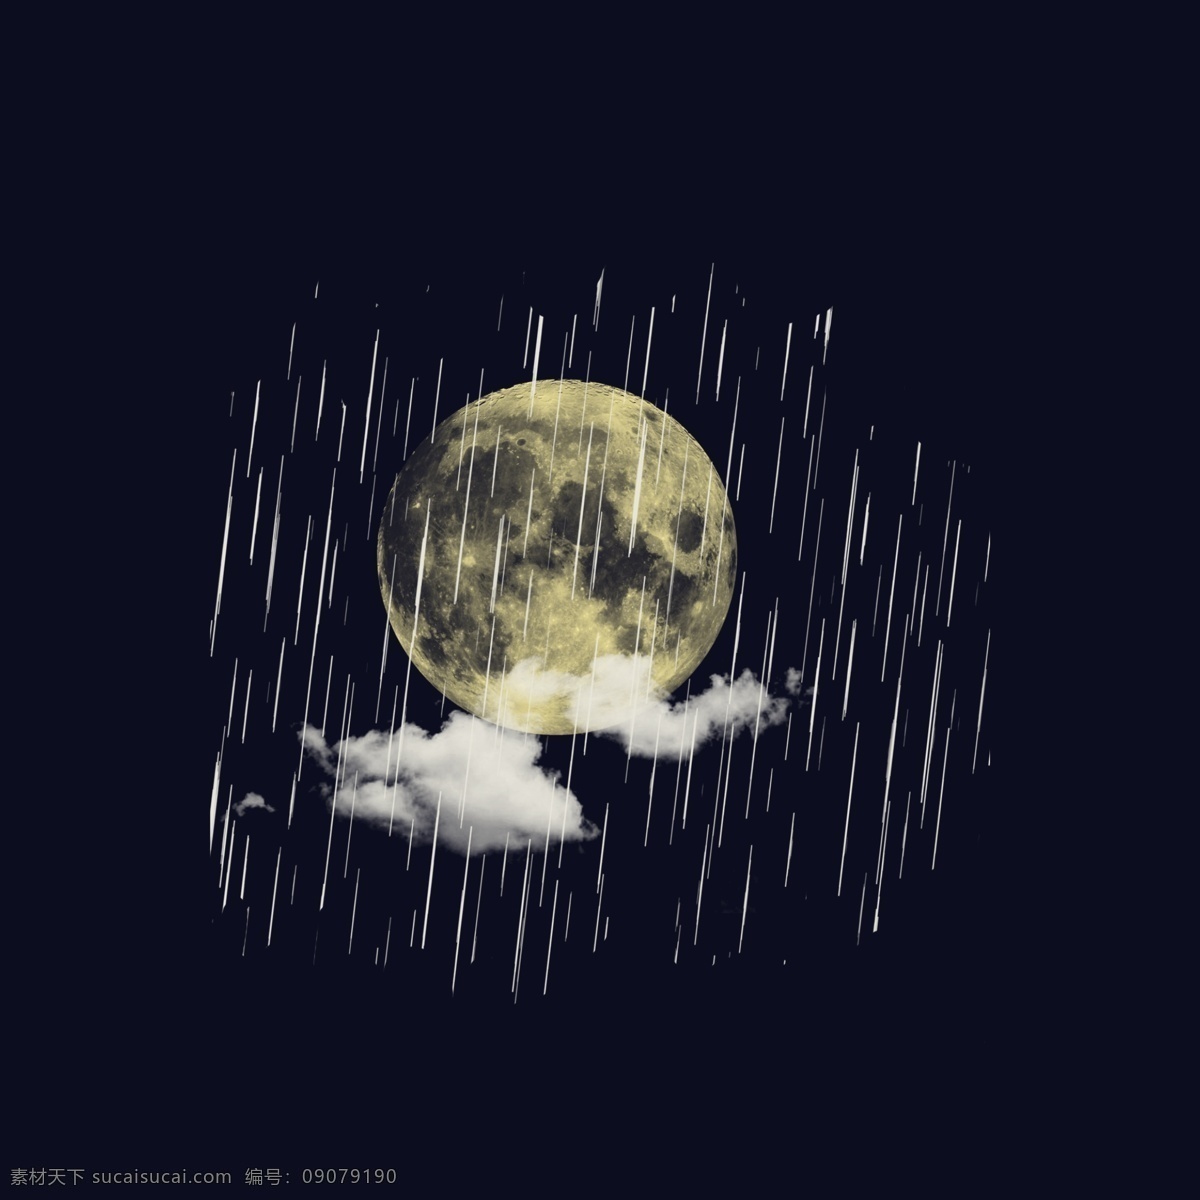 雨 中 夜晚 月亮 雨月 下雨 水滴 水滴效果 雨夜 雨滴凝结 雨水 雨水流动 水花飞溅效果 雨季 梅雨